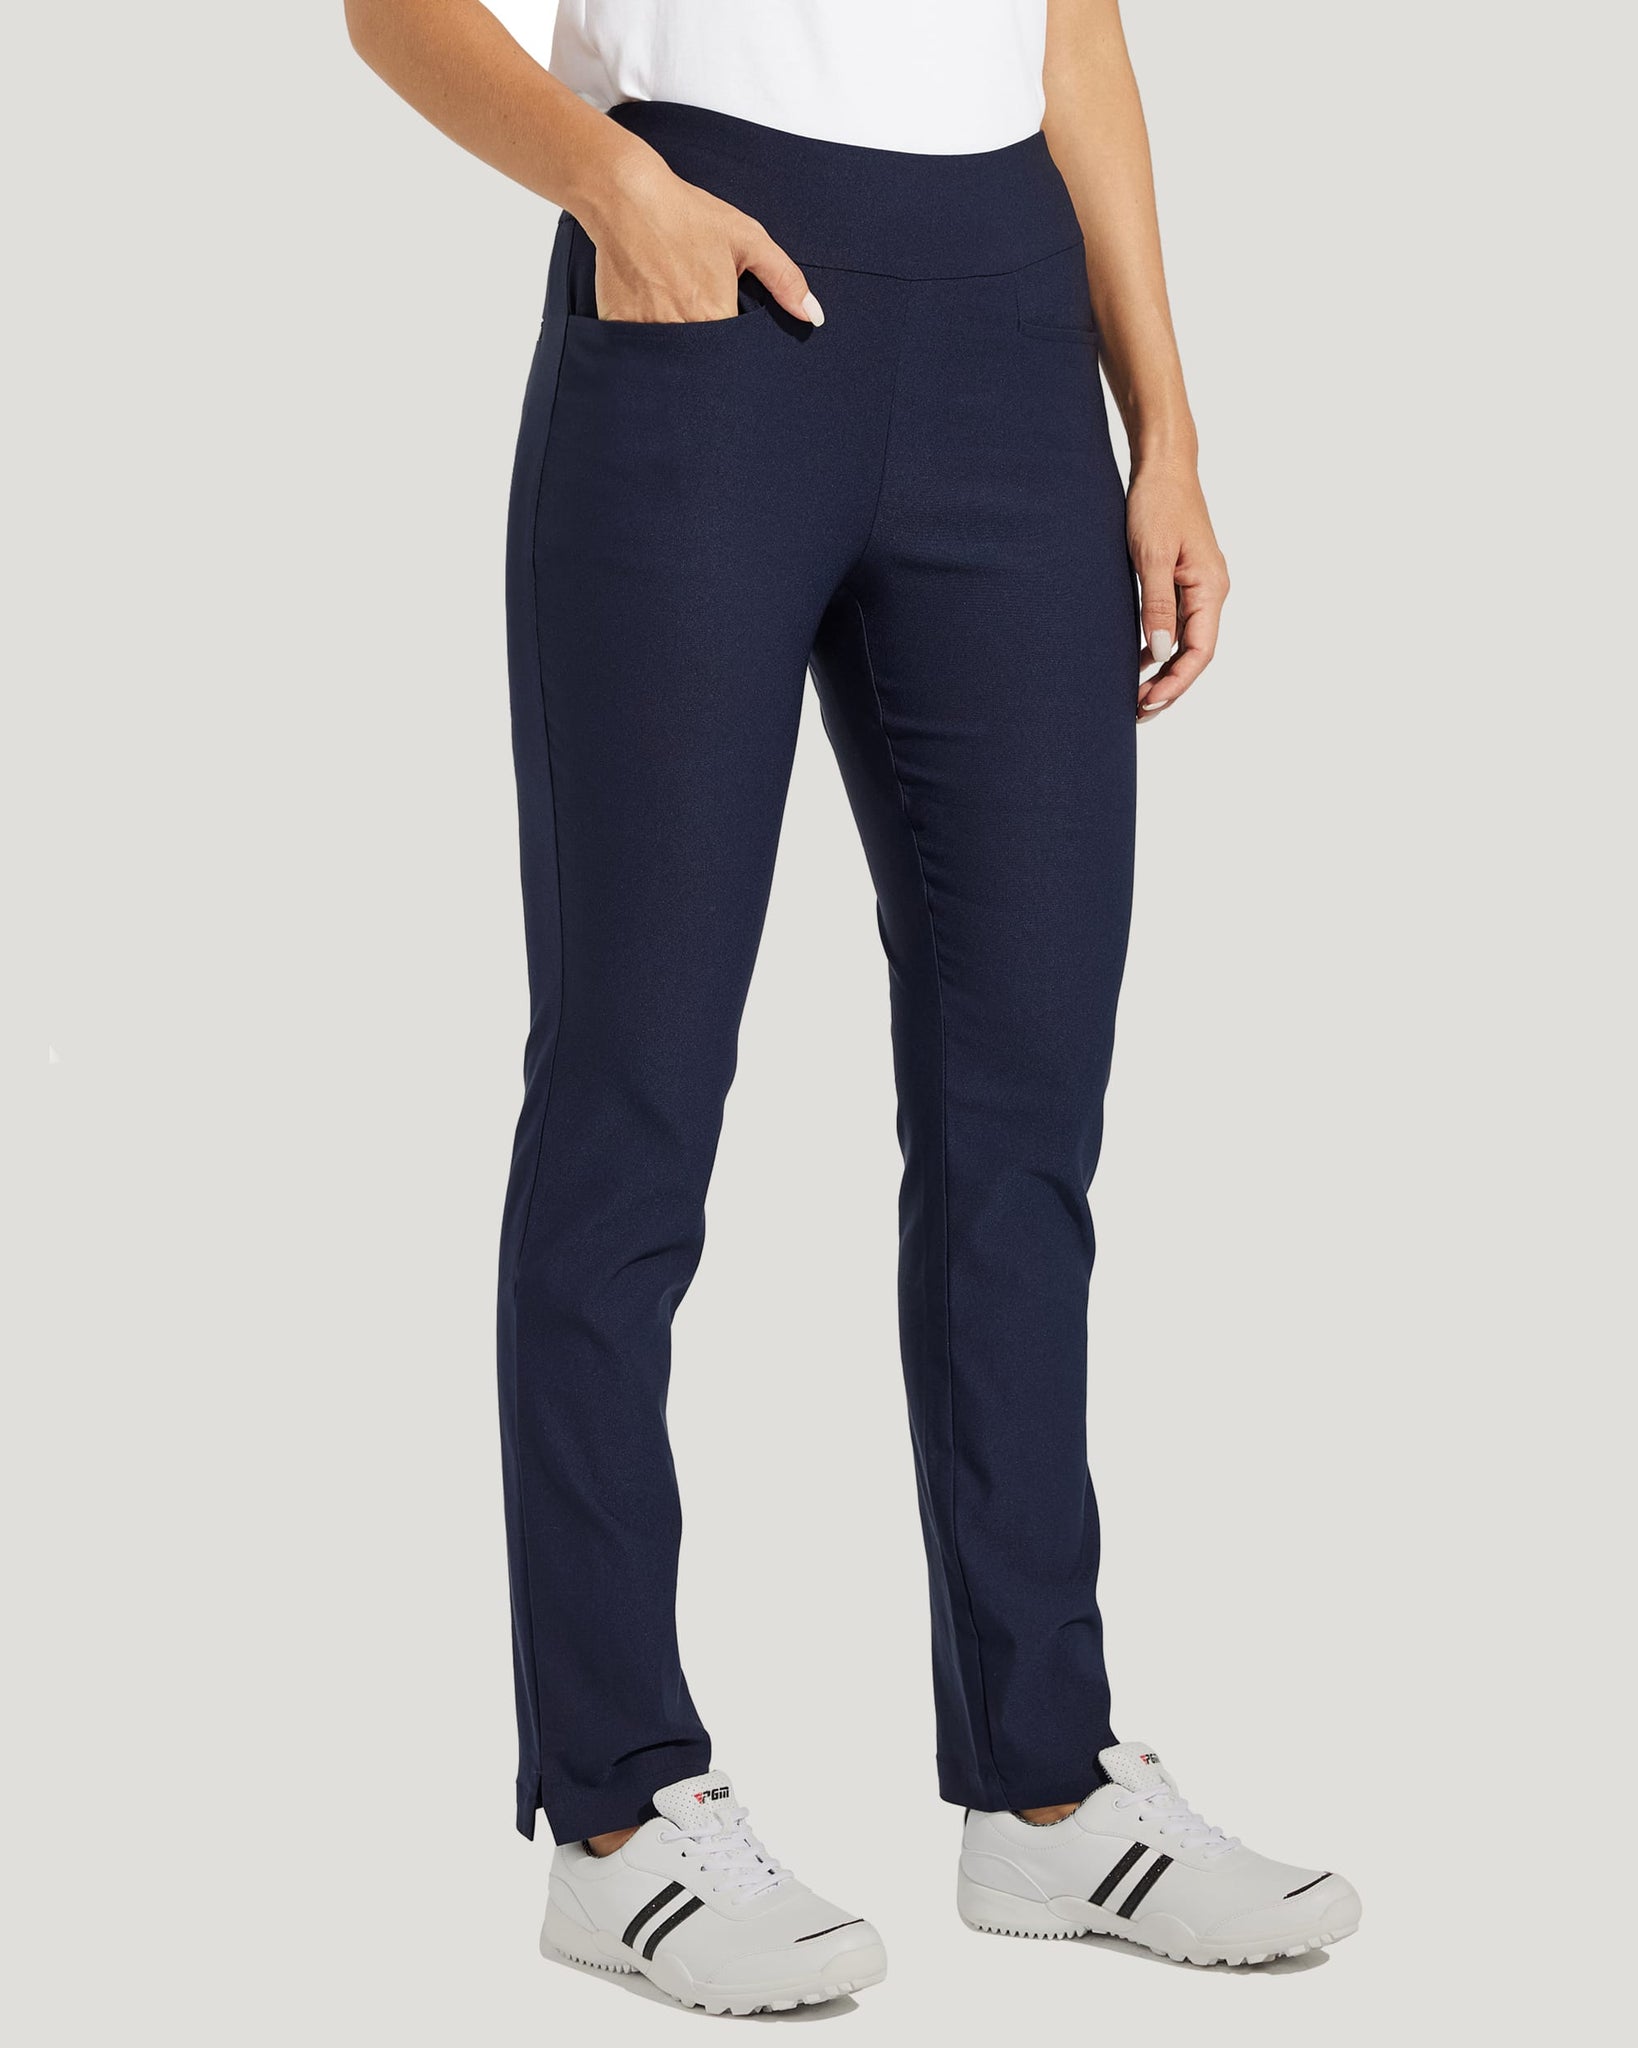 Women's Golf Pull-On Pants_Navy_model2